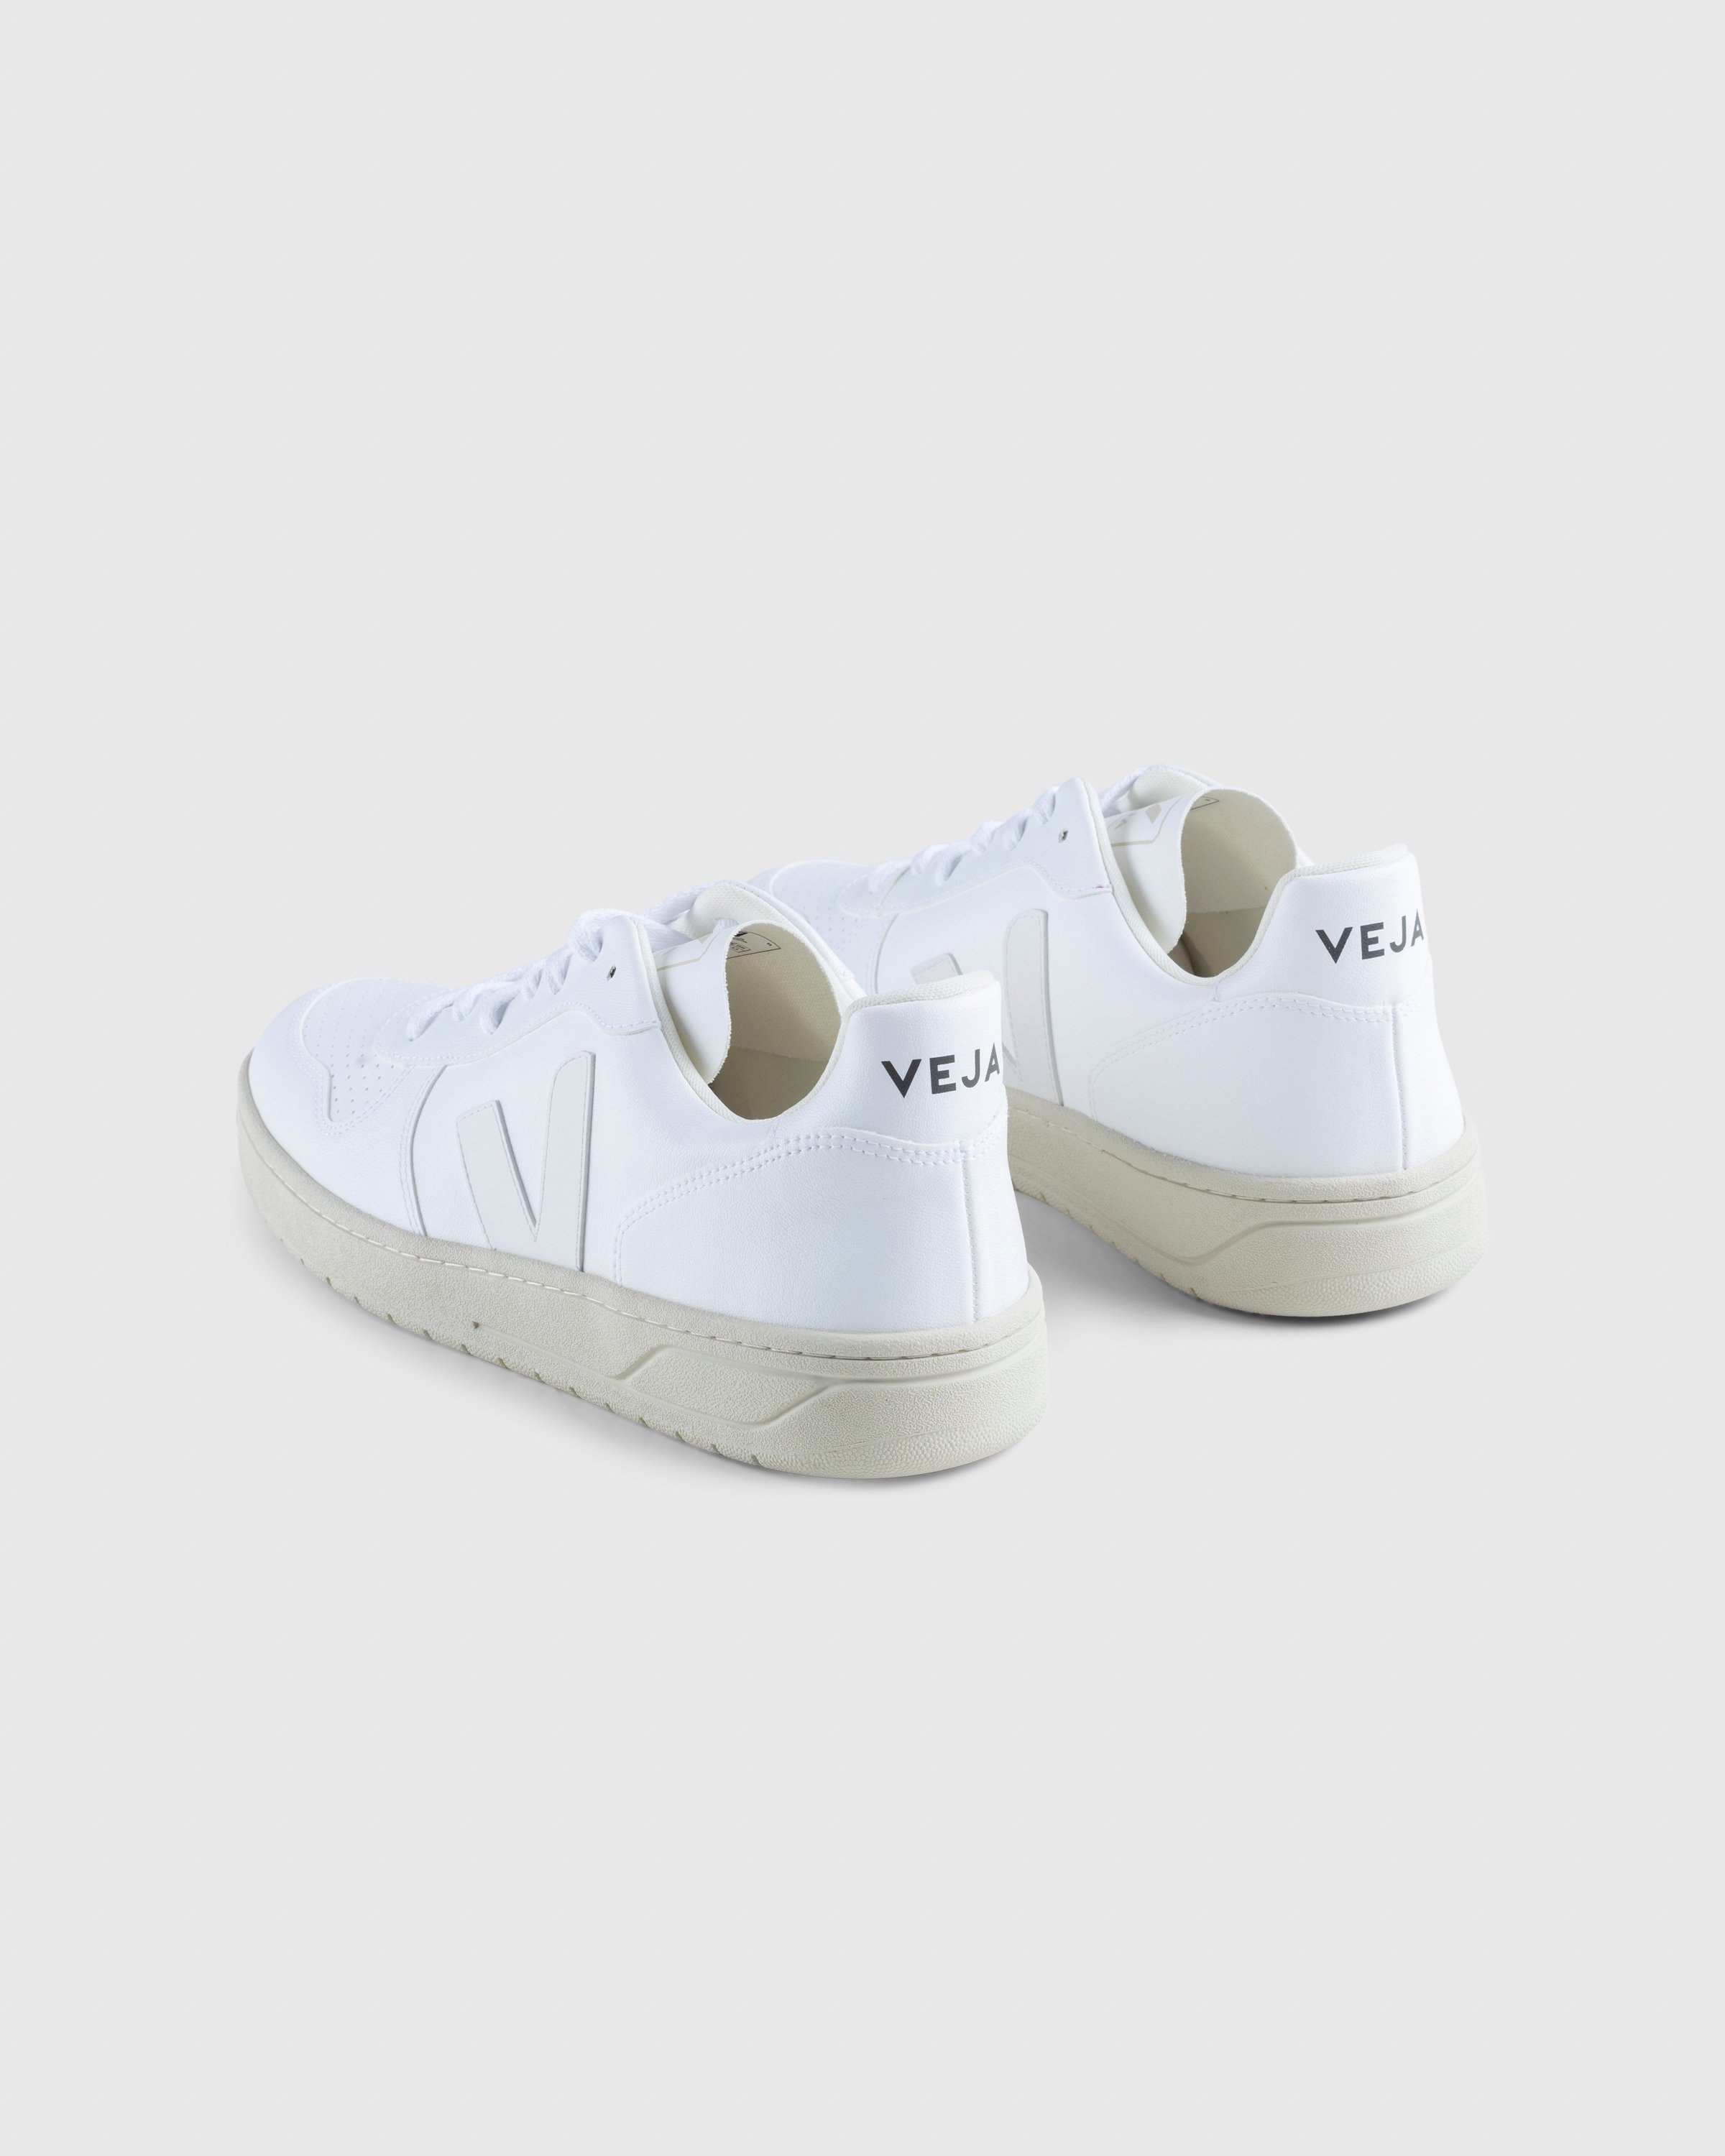 VEJA - V-10 - Footwear - White - Image 4